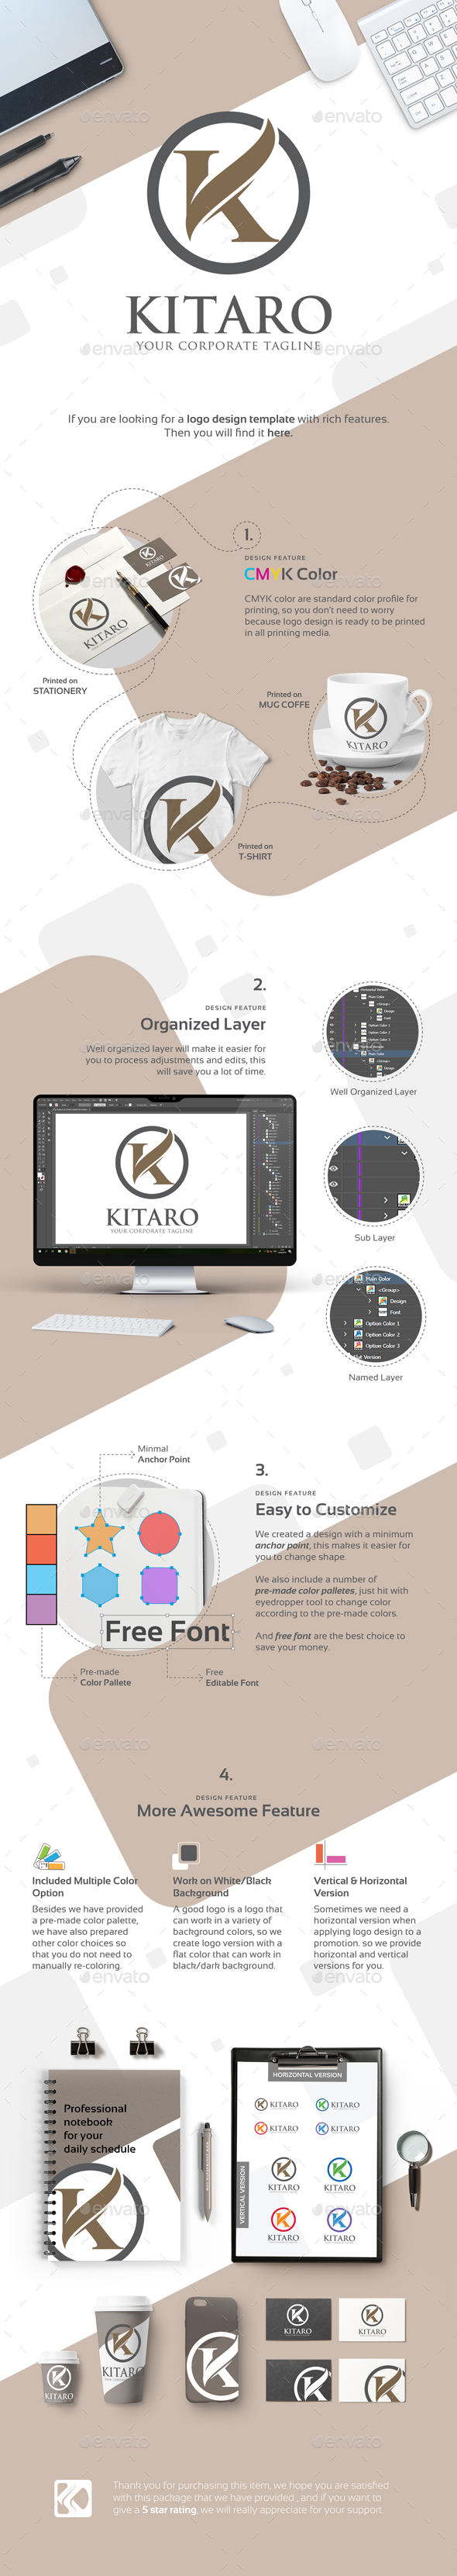 Letter K Logo - Kitaro